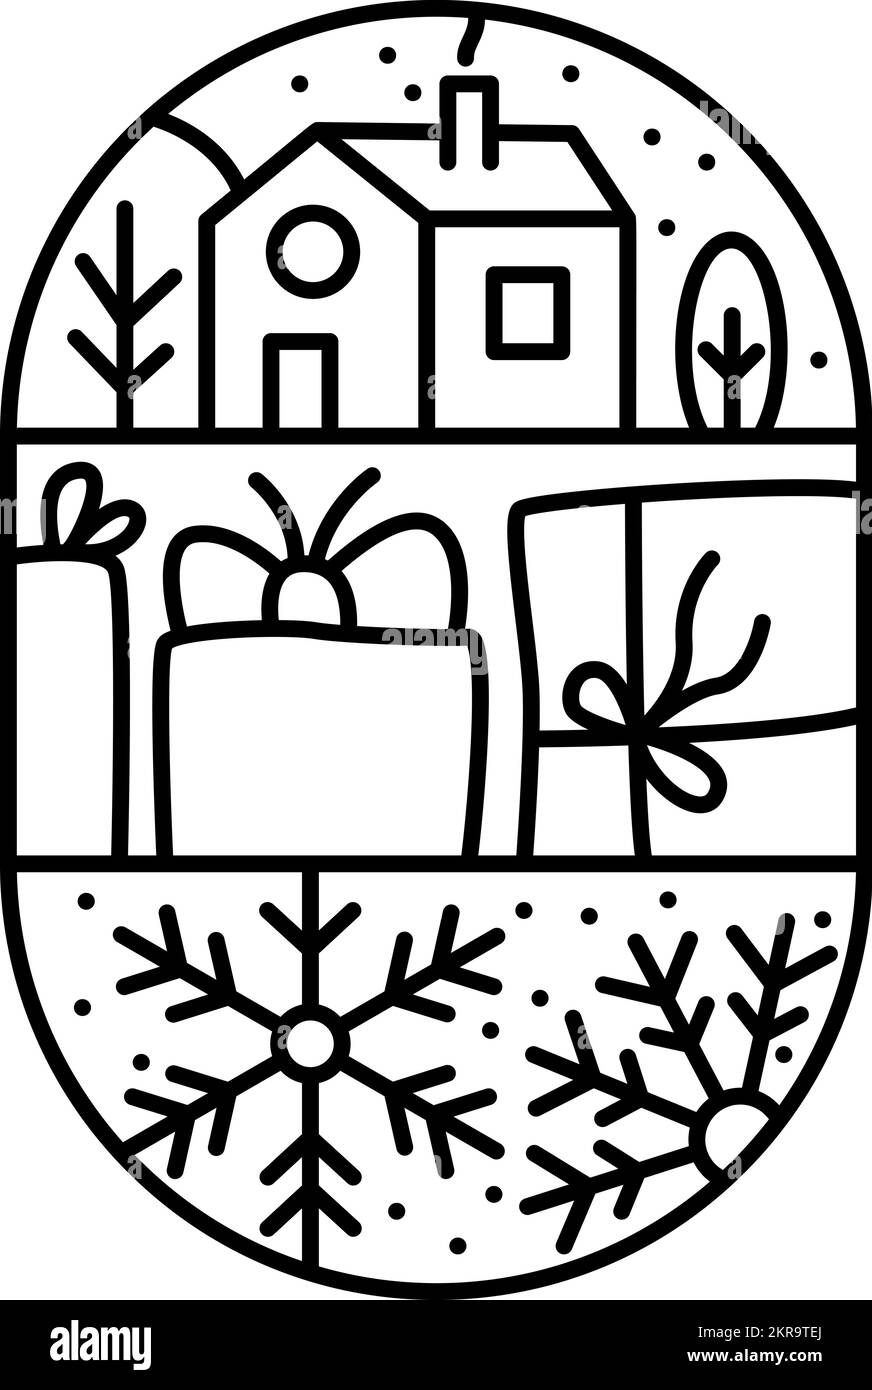 Logotipo de Navidad composición de adviento copo de nieve, cajas de regalo, casa y árboles. Constructor de vector de invierno monolina dibujado a mano en marco semirredondo y. Ilustración del Vector